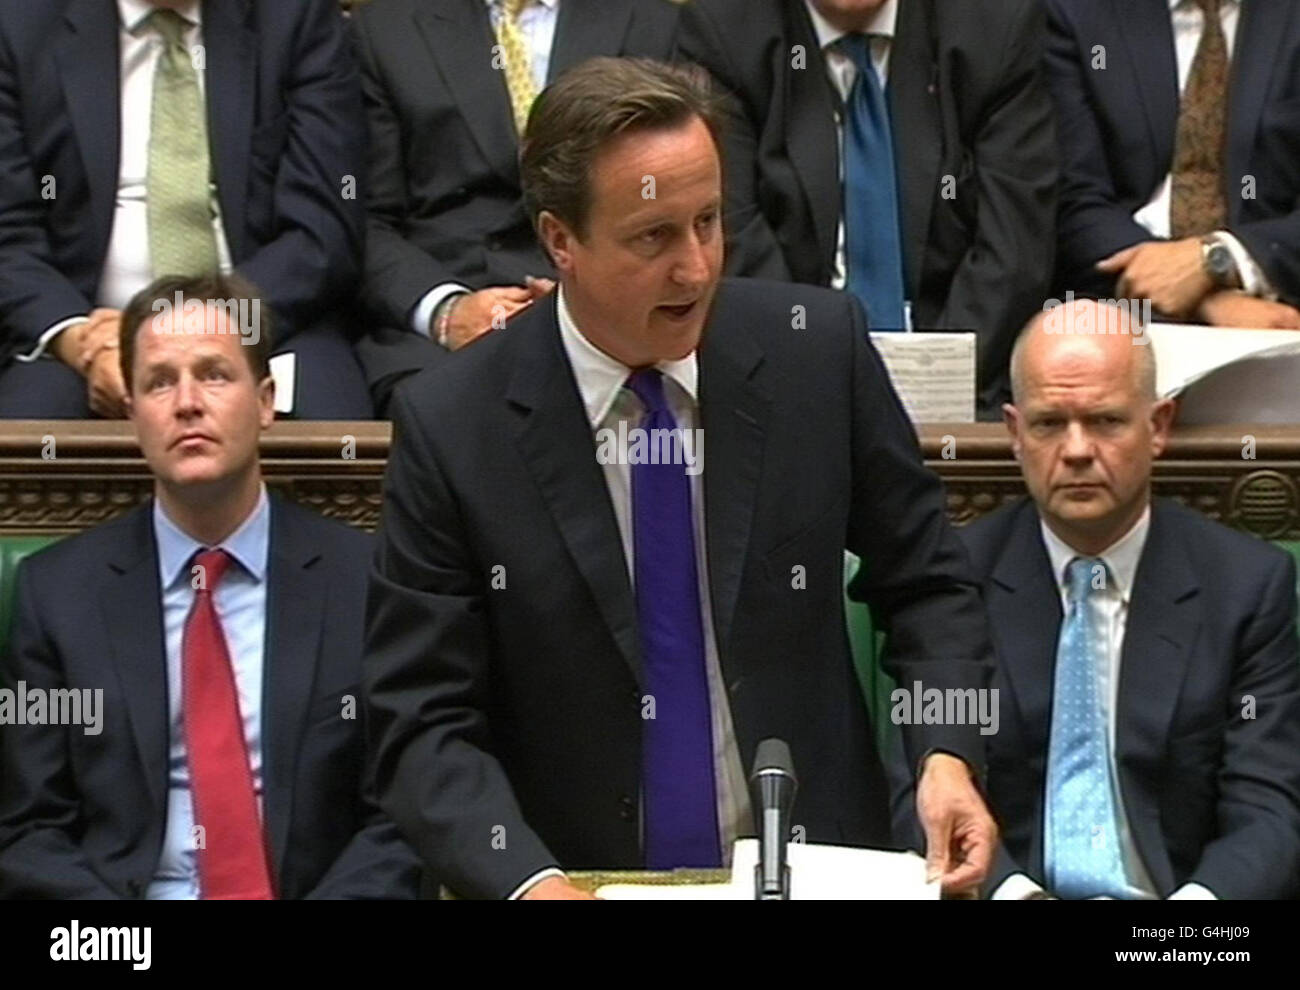 El Primer Ministro David Cameron hace una declaración a la Cámara de los Comunes sobre el conflicto de Libia. Foto de stock